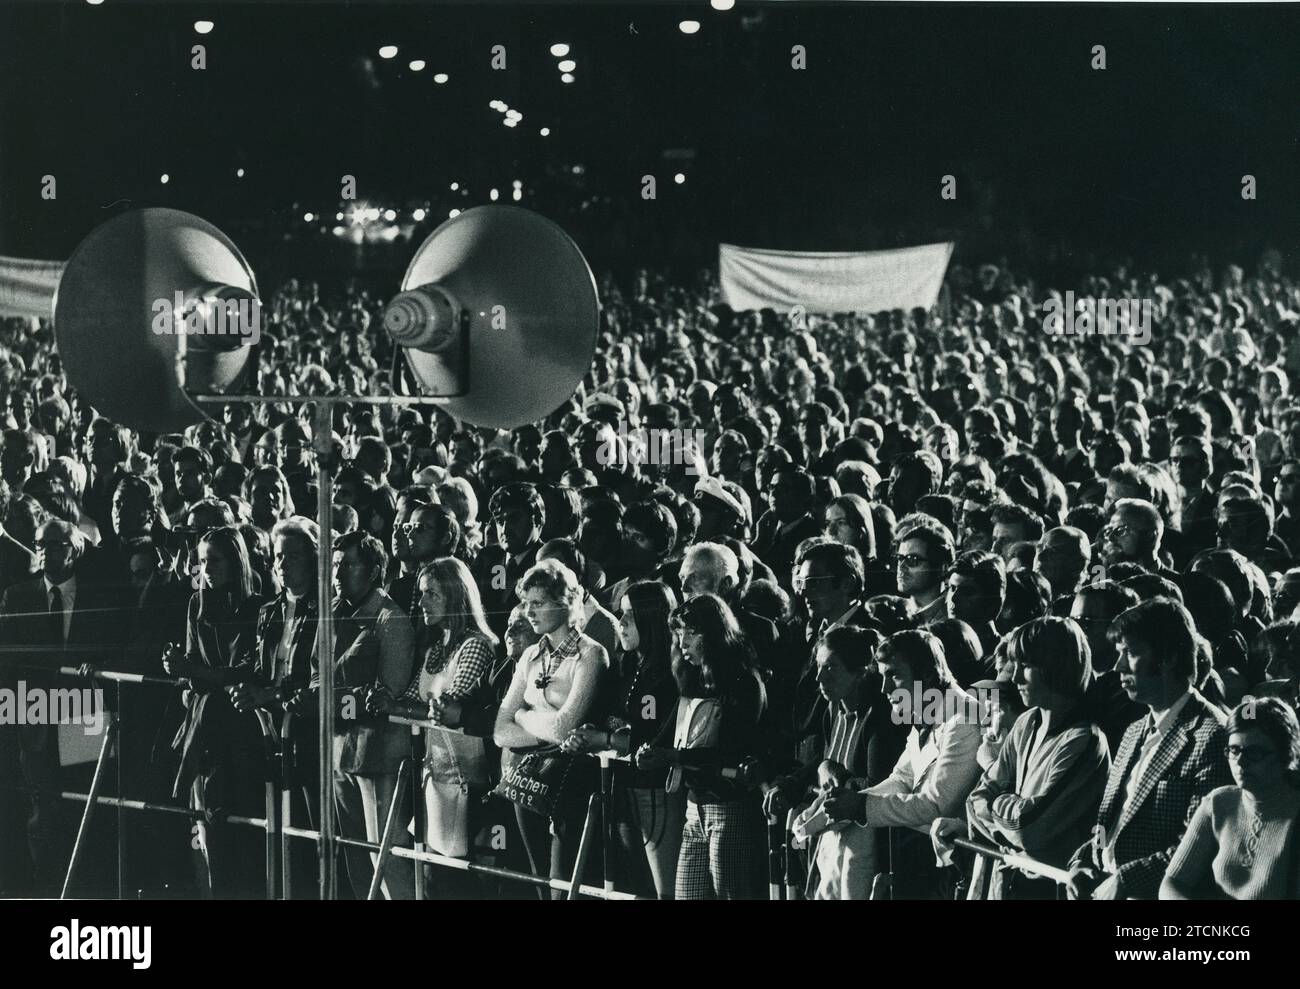 Munich (Allemagne), 09/06/1972. Attaque contre le siège de l'équipe olympique israélienne lors de la célébration des Jeux olympiques de Munich en 1972. Dans l'image, une manifestation de jeunes dans la nuit du 5 au 6 septembre. Crédit : Album / Archivo ABC Banque D'Images